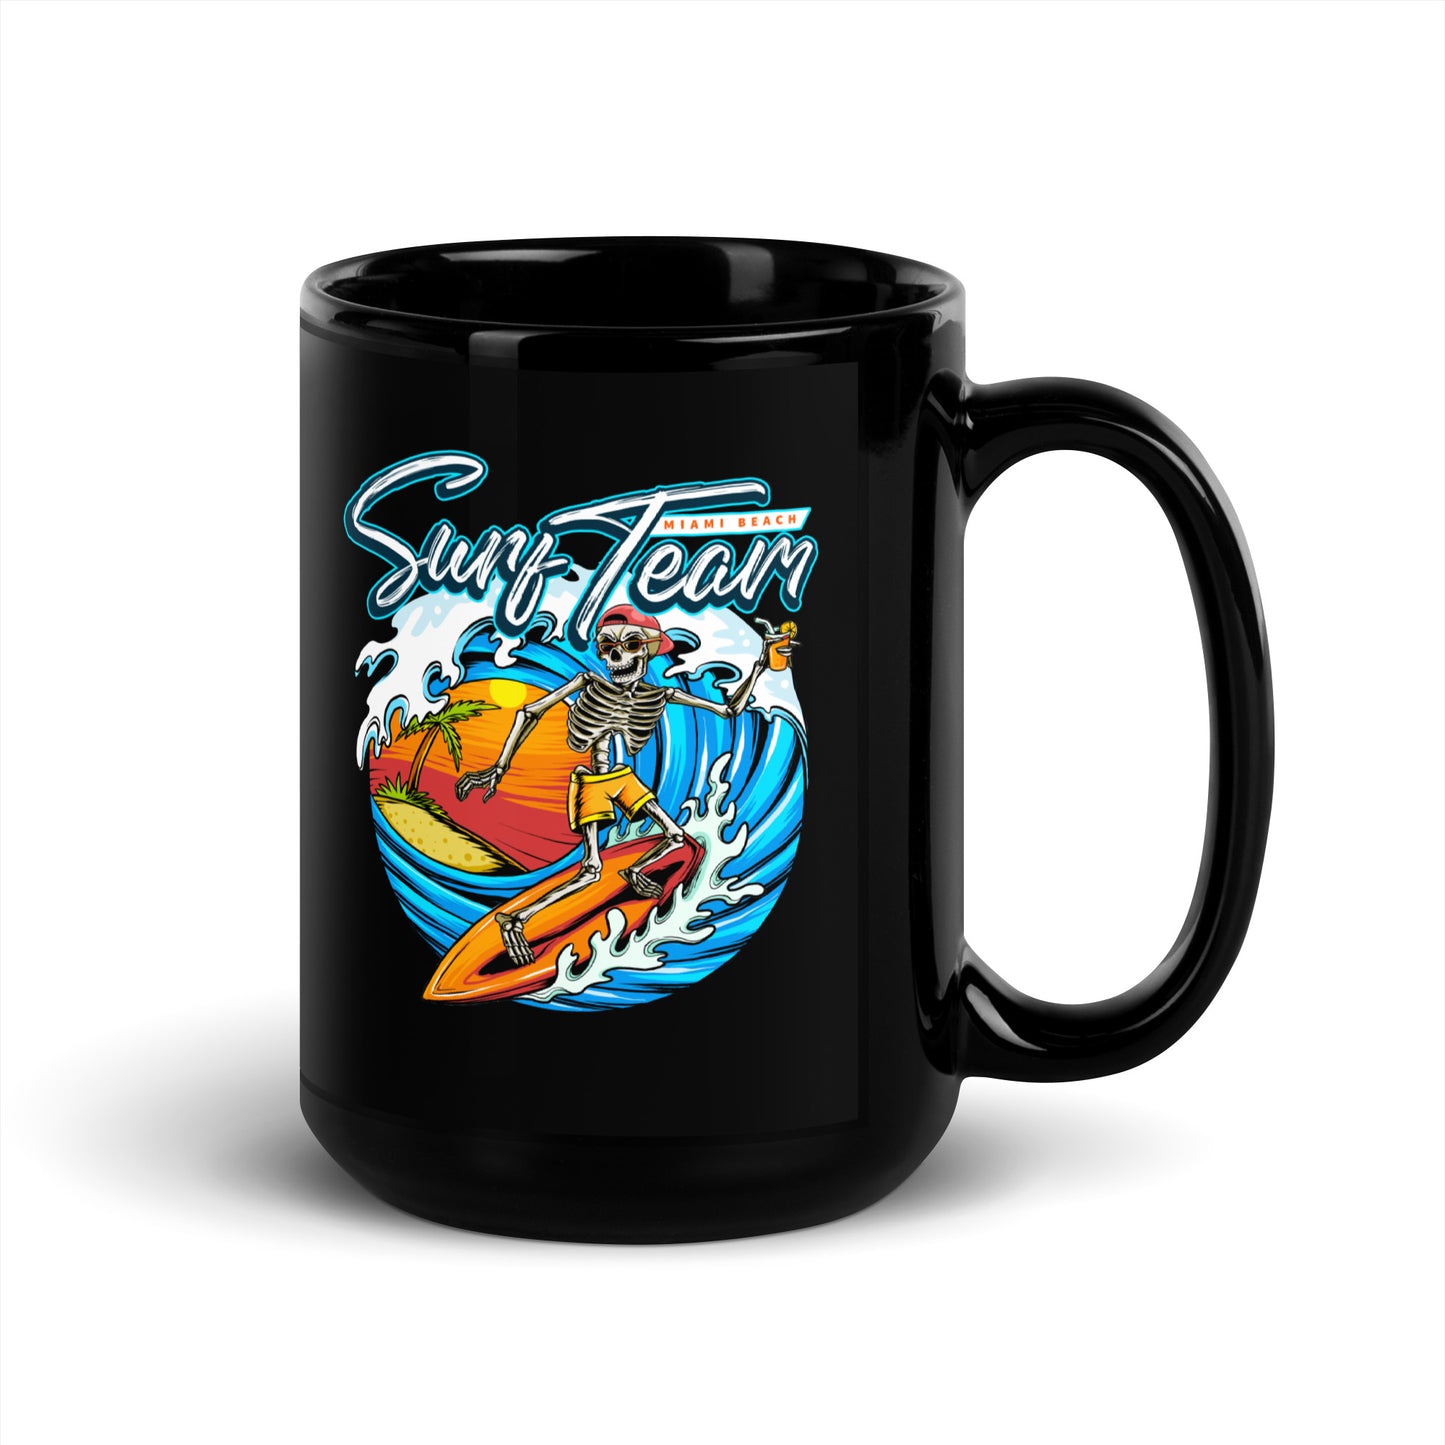 Surf Team Coffee Mug